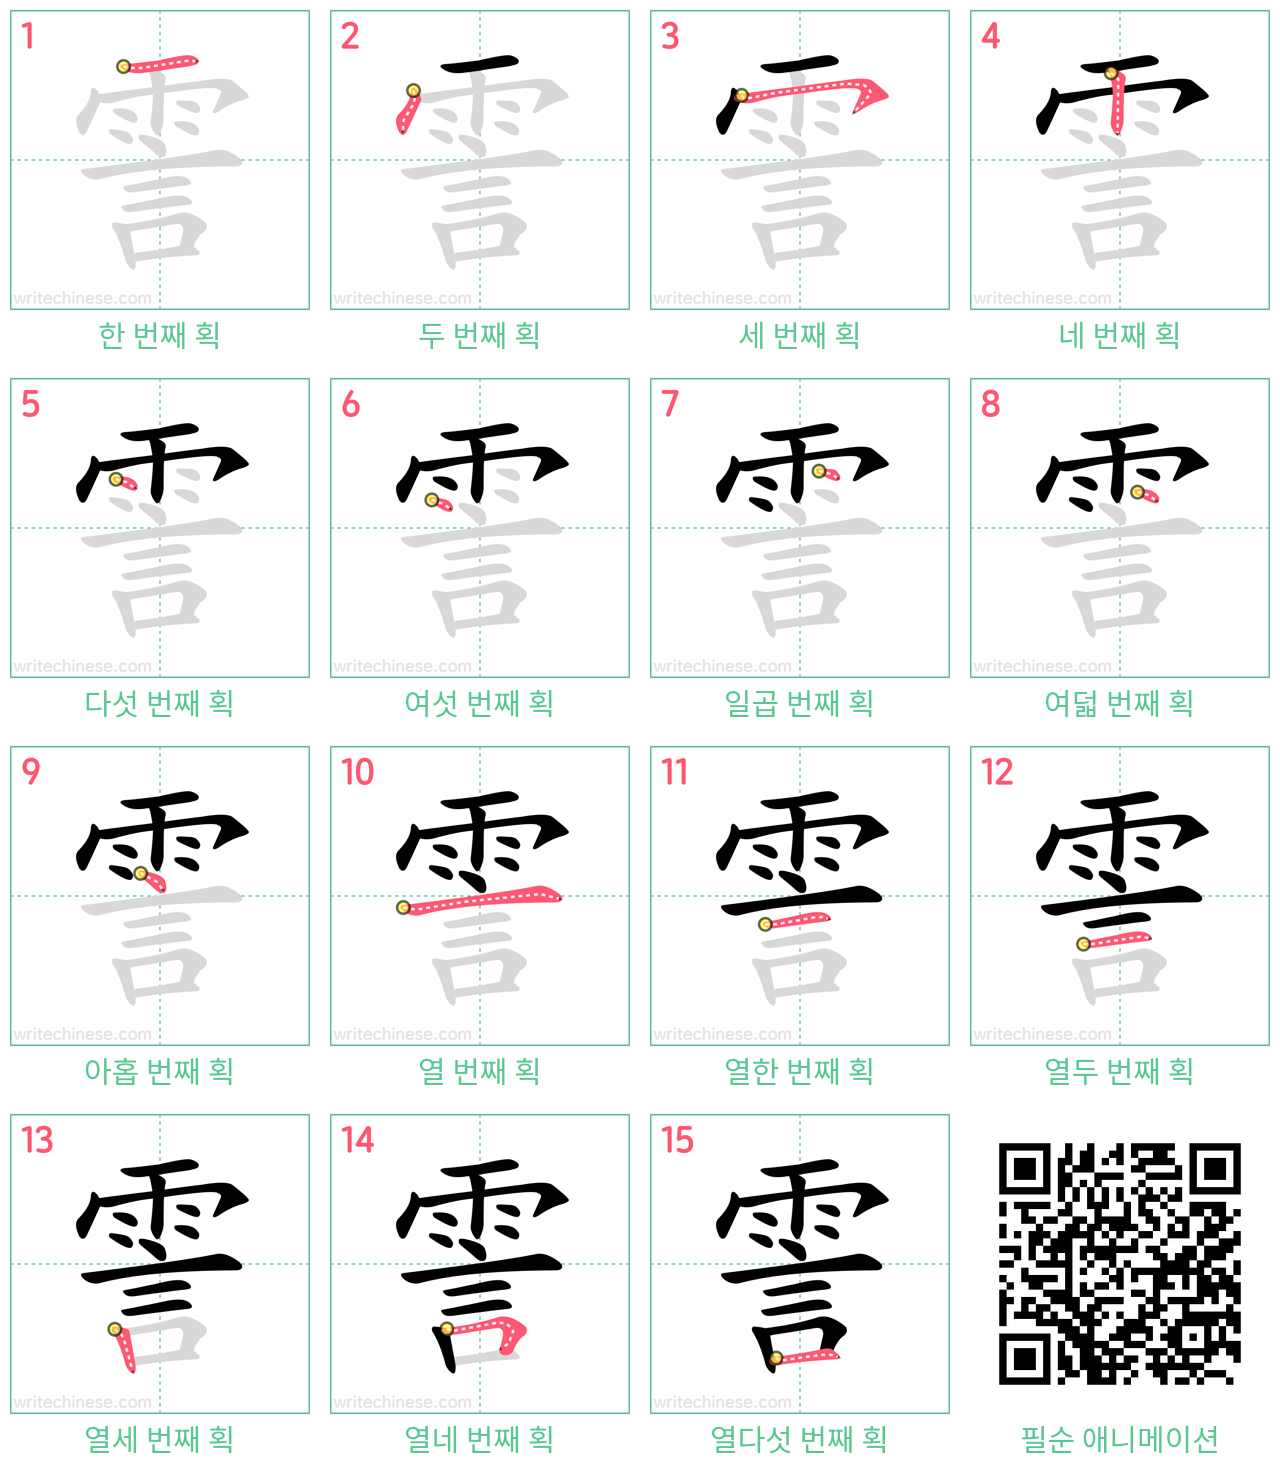 霅 step-by-step stroke order diagrams